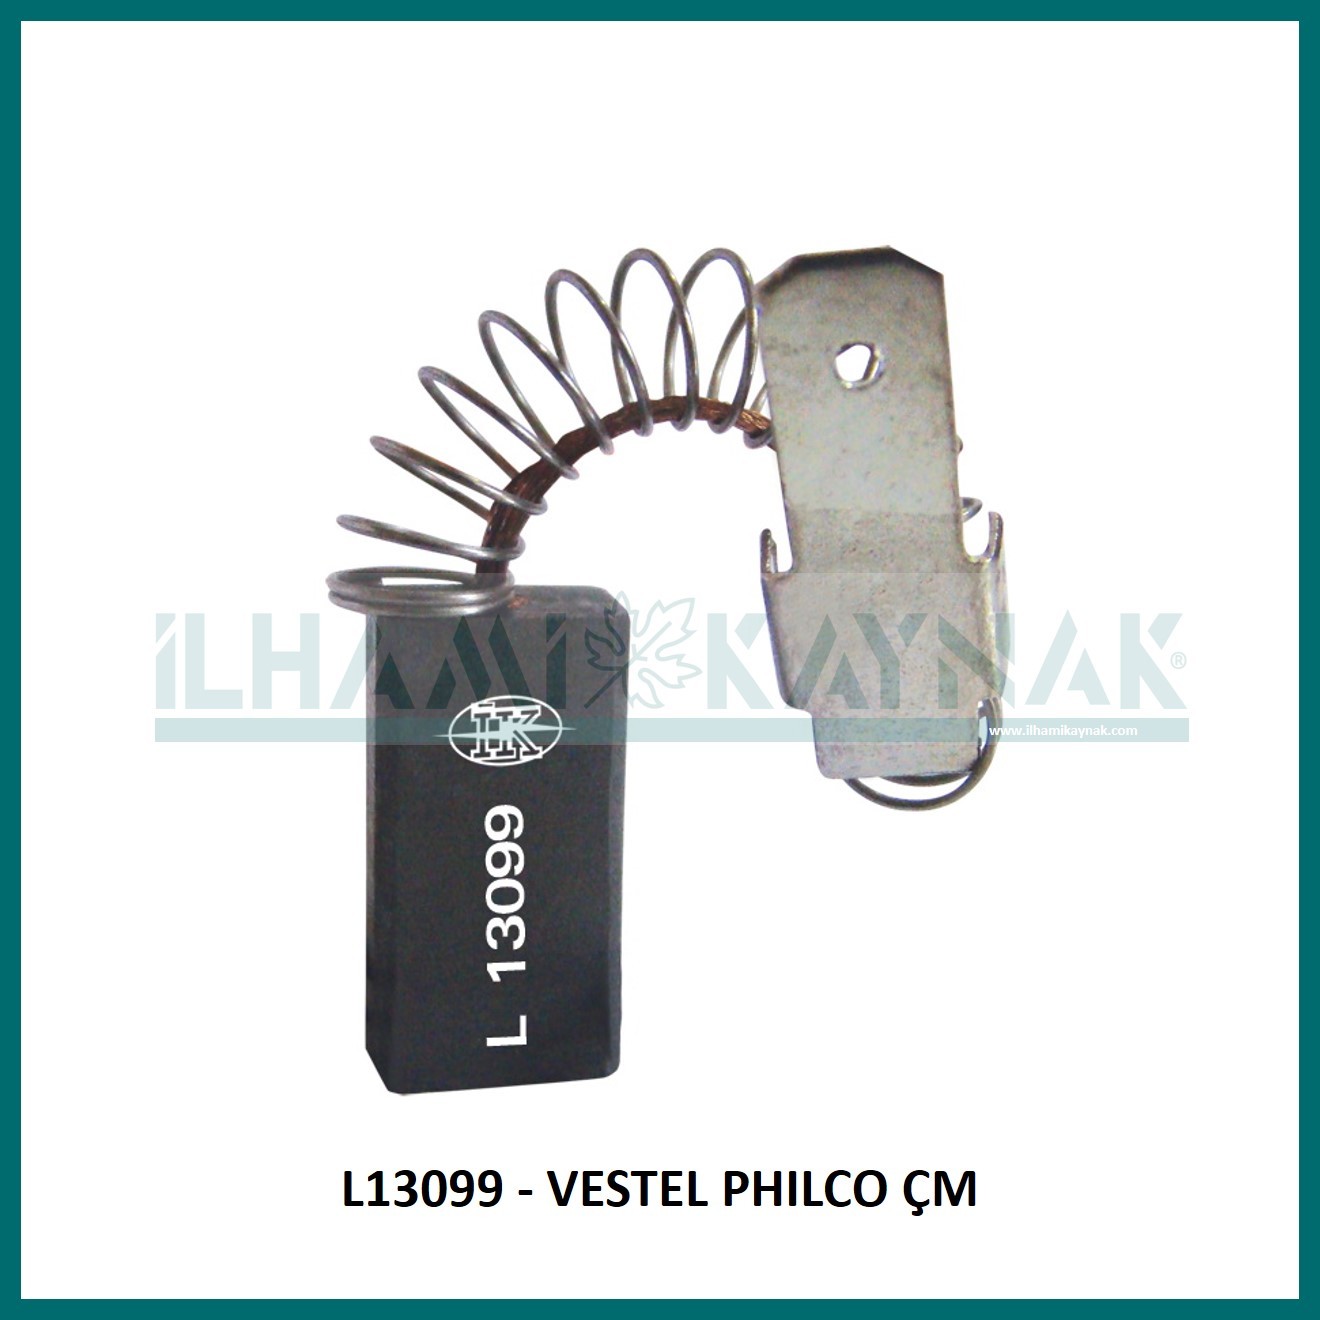 L13099 - VESTEL PHILCO ÇM - 6,5*10*20 mm - Minimum Satın Alım: 10 Adet.